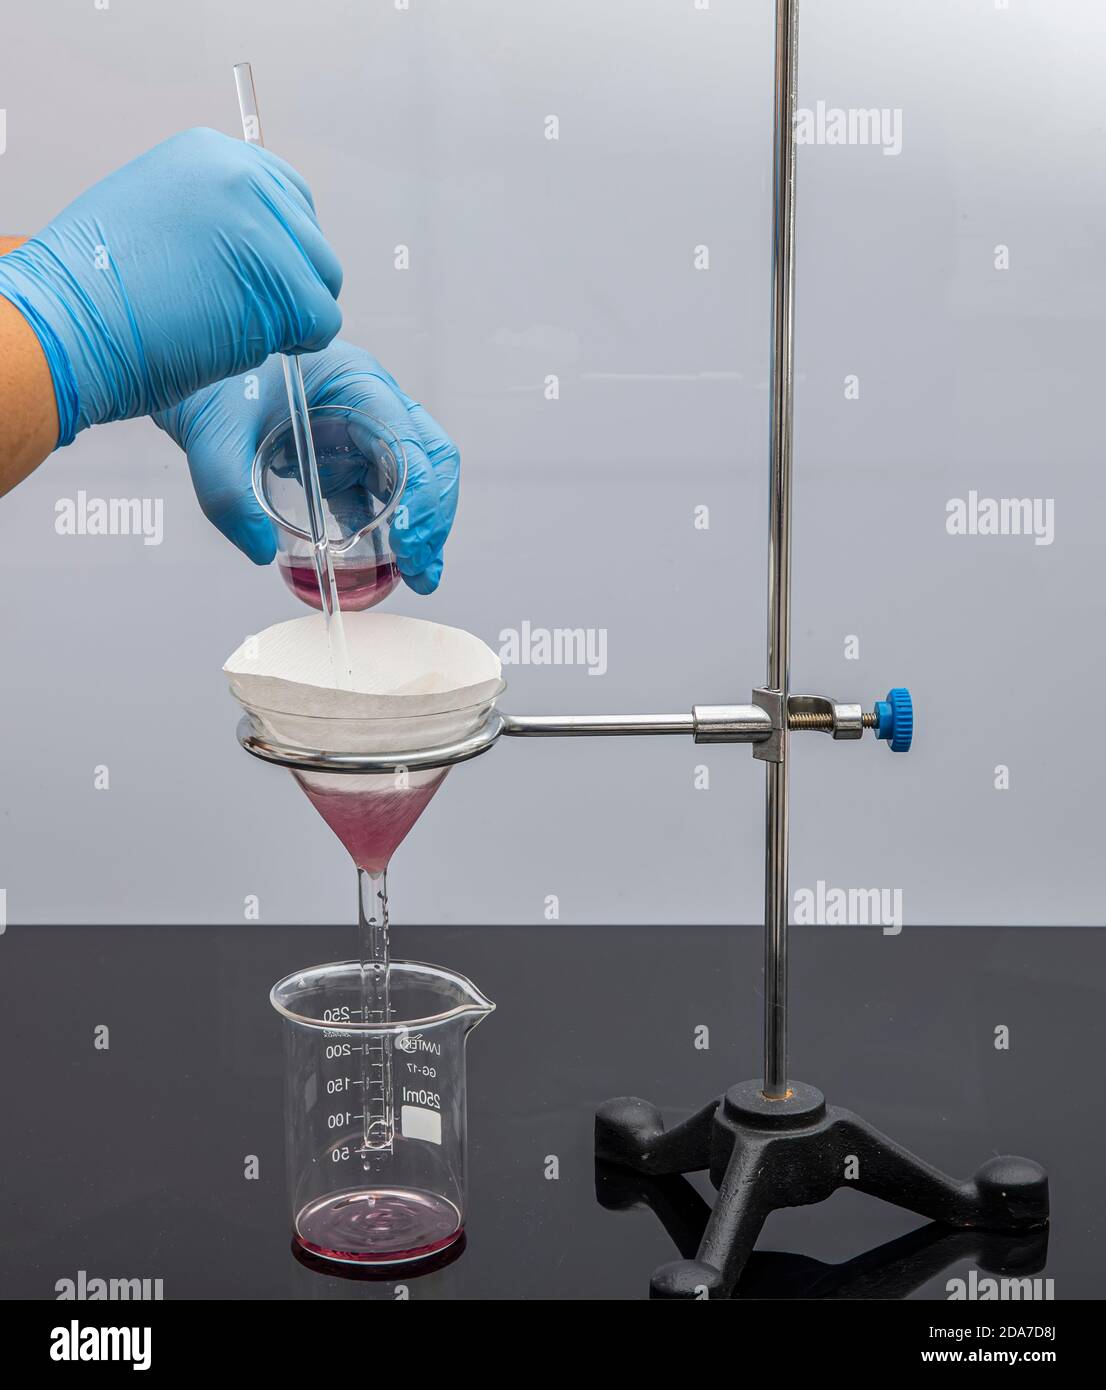 Papel de filtro en laboratorio. Los científicos son la filtración química  filtrando a través de papel de filtro en un embudo de vidrio, Close up.  Farmacéutico filtrado sub Fotografía de stock -